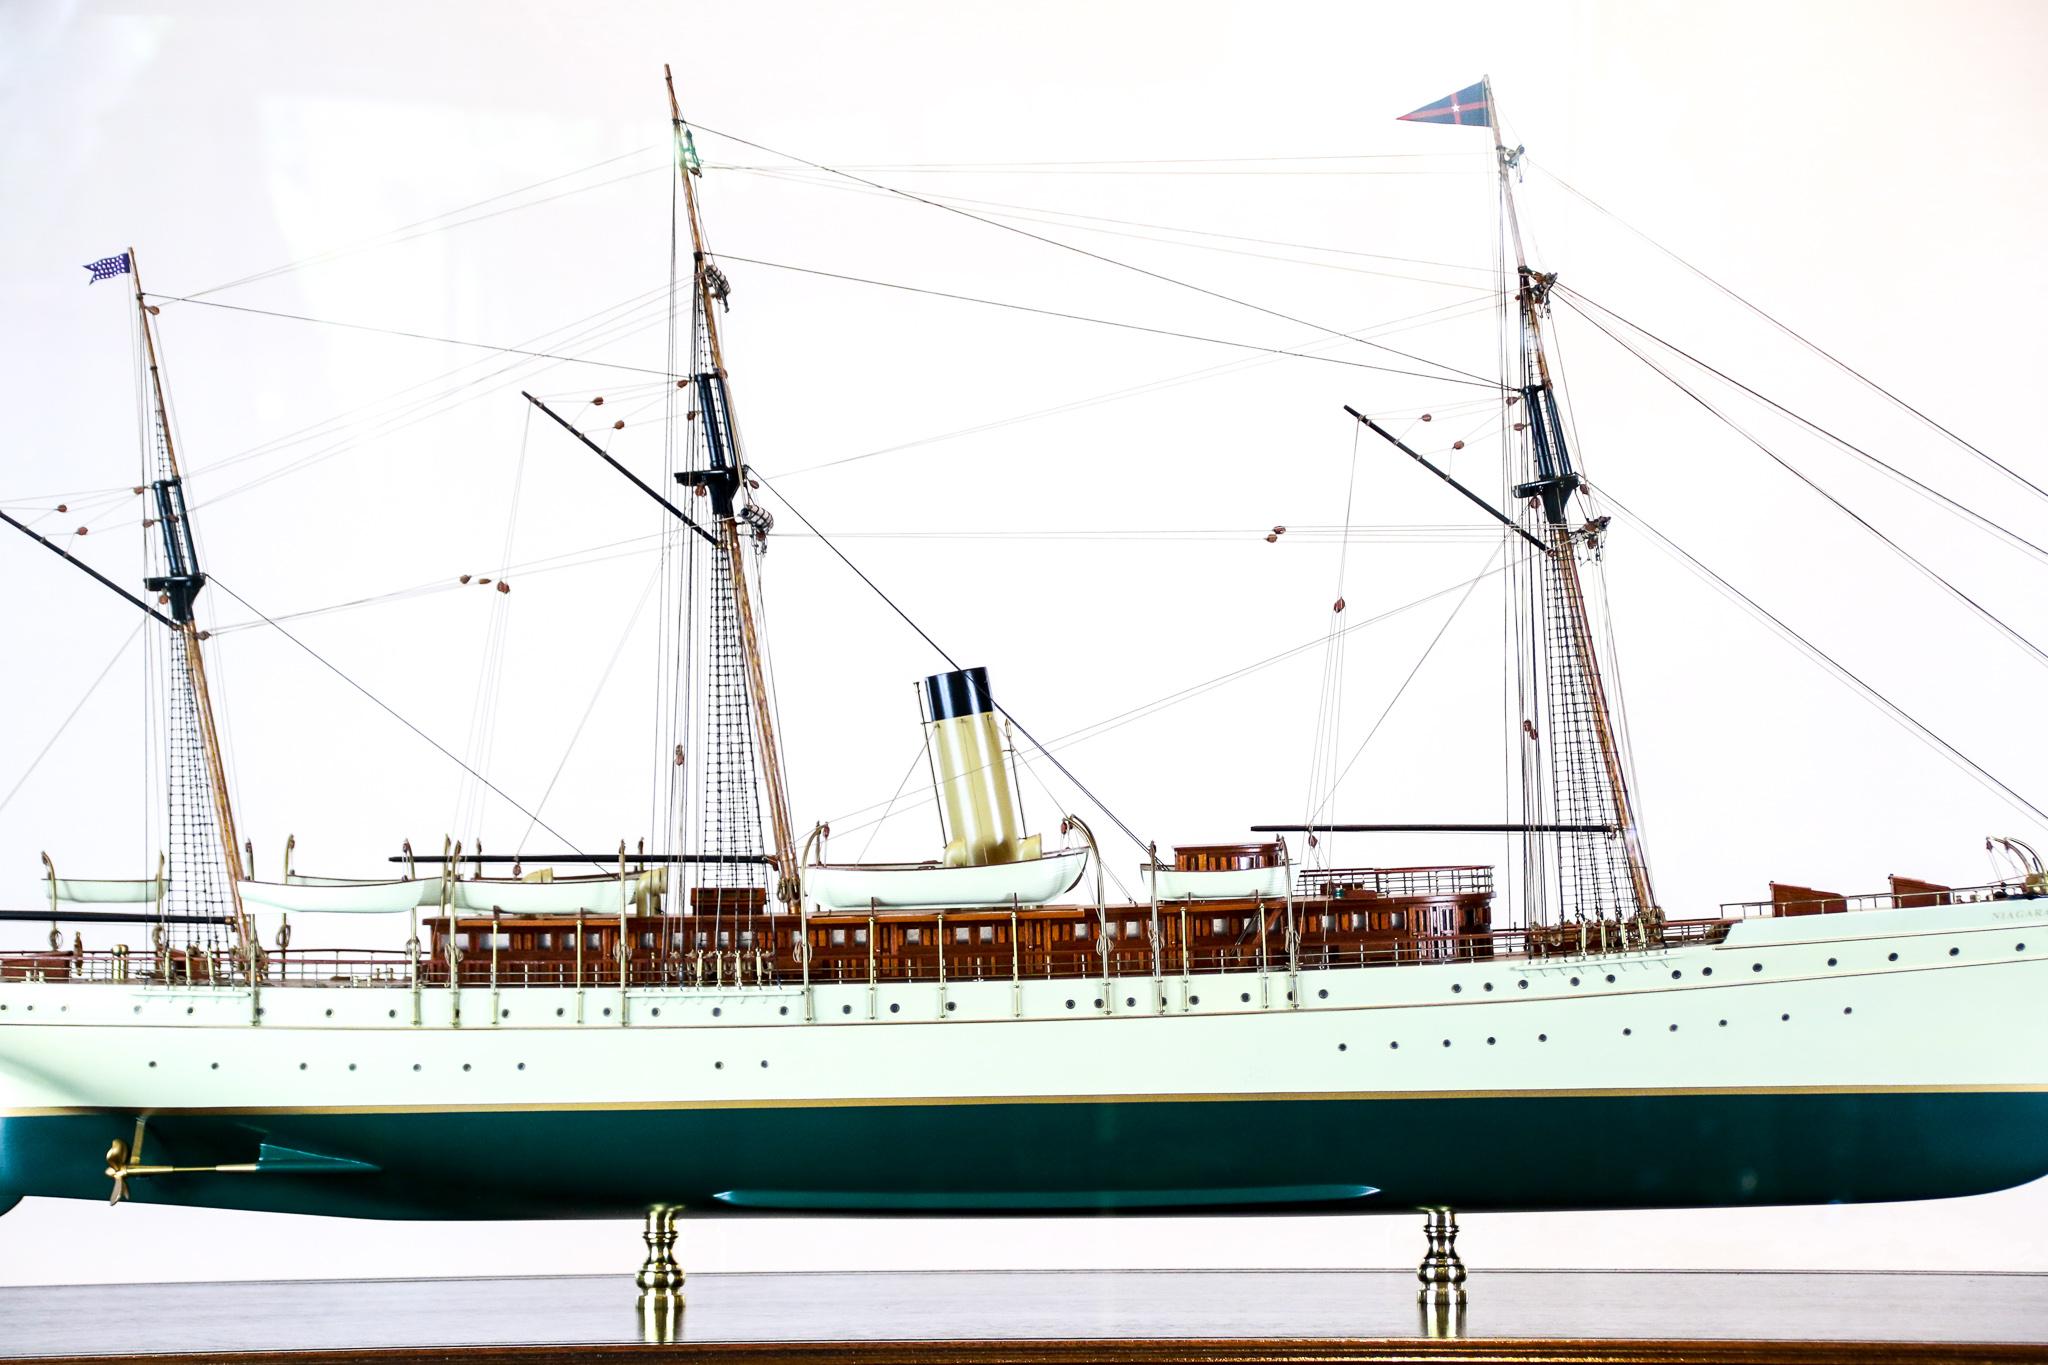 Le yacht à vapeur Niagara du New York Yacht Club a été lancé en 1898. Il appartenait au millionnaire Howard Gould (1871-1959), fils du magnat des chemins de fer et promoteur Jay Gould. Le Niagara était l'un des plus grands yachts à vapeur jamais